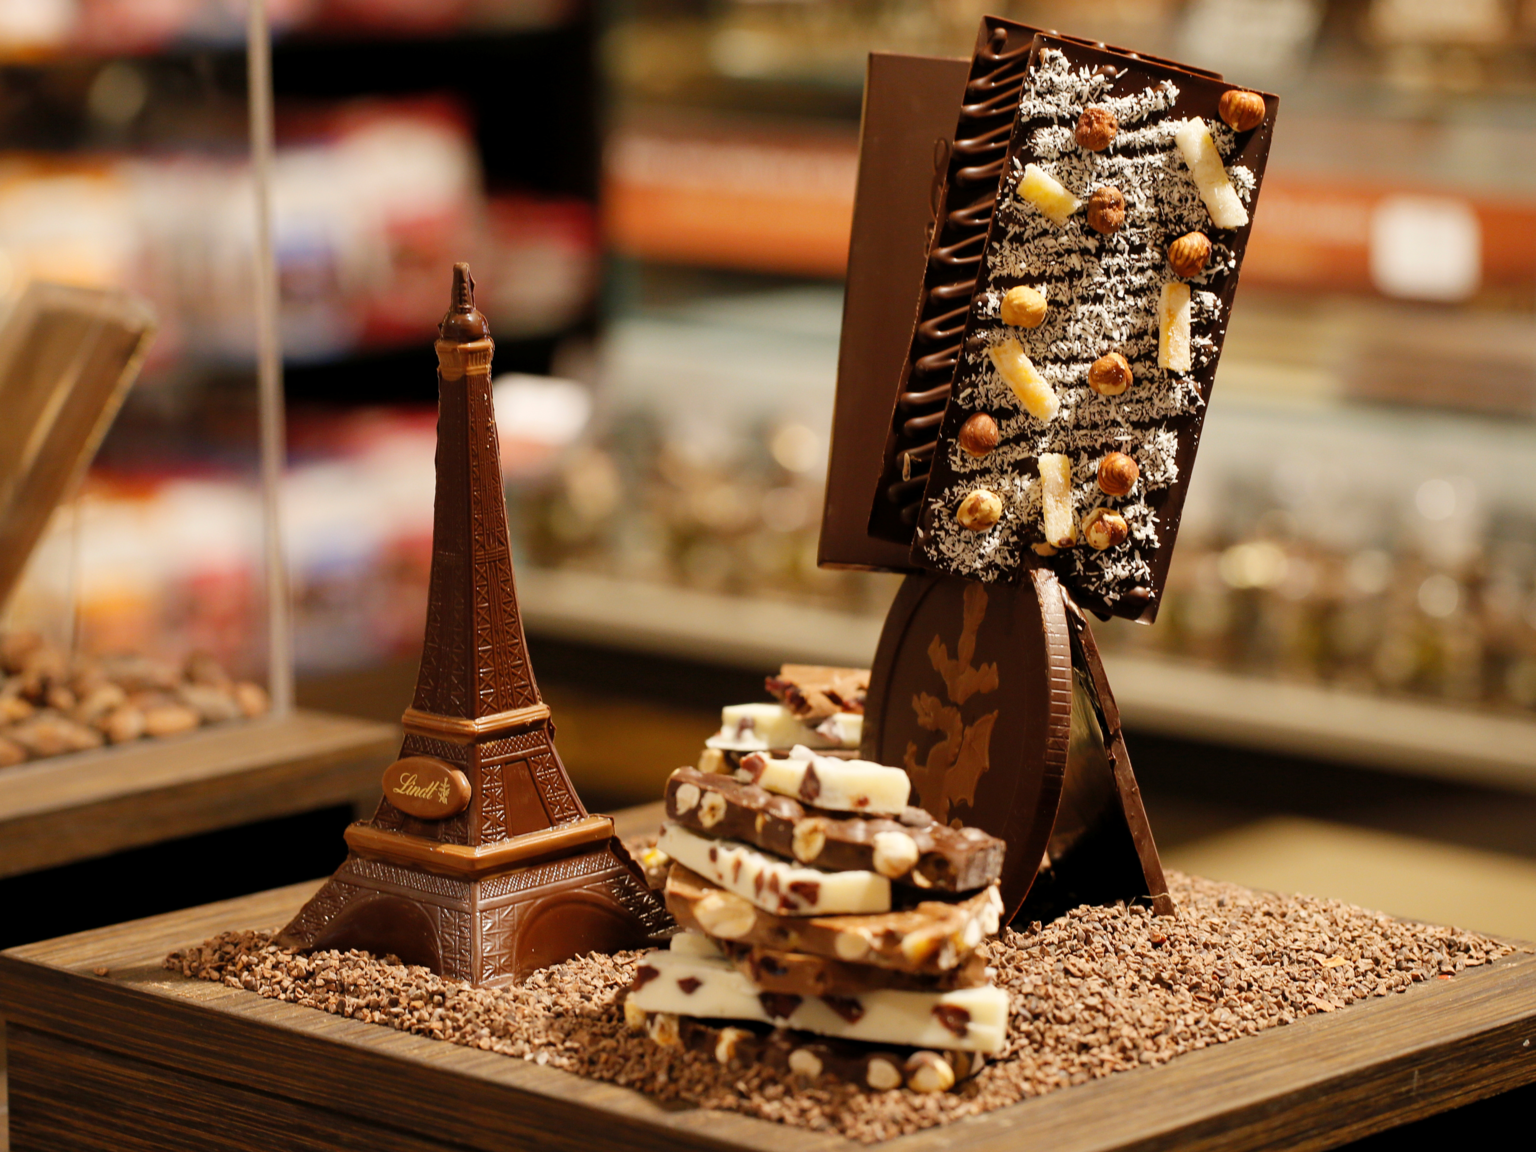 Мир конфет. Музей шоколада в Париже «Choco-story». Музей шоколада, Париж, Франция. Шоколатье Антуан Франция. Необычные шоколадные конфеты.